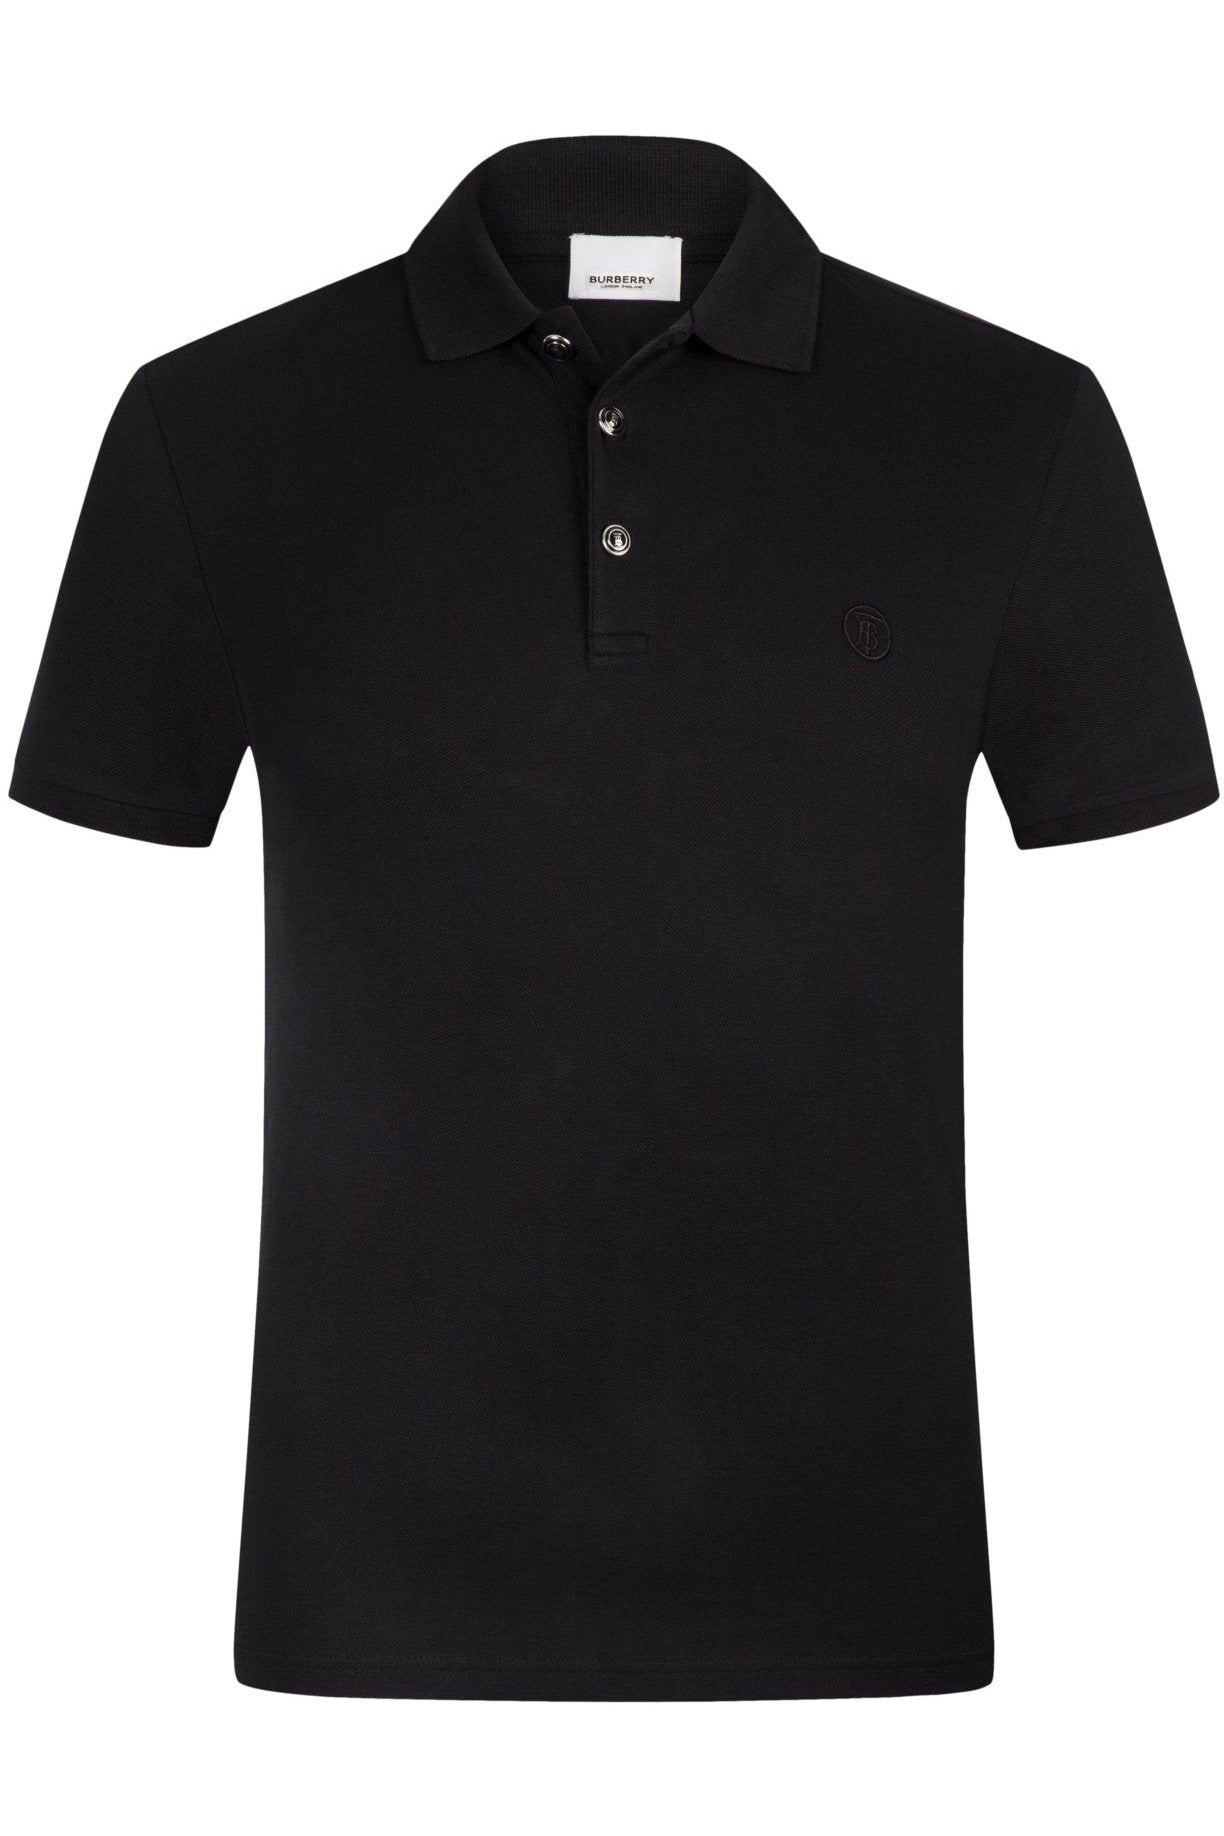 Burberry Black Polo Shirt - Giltenergy